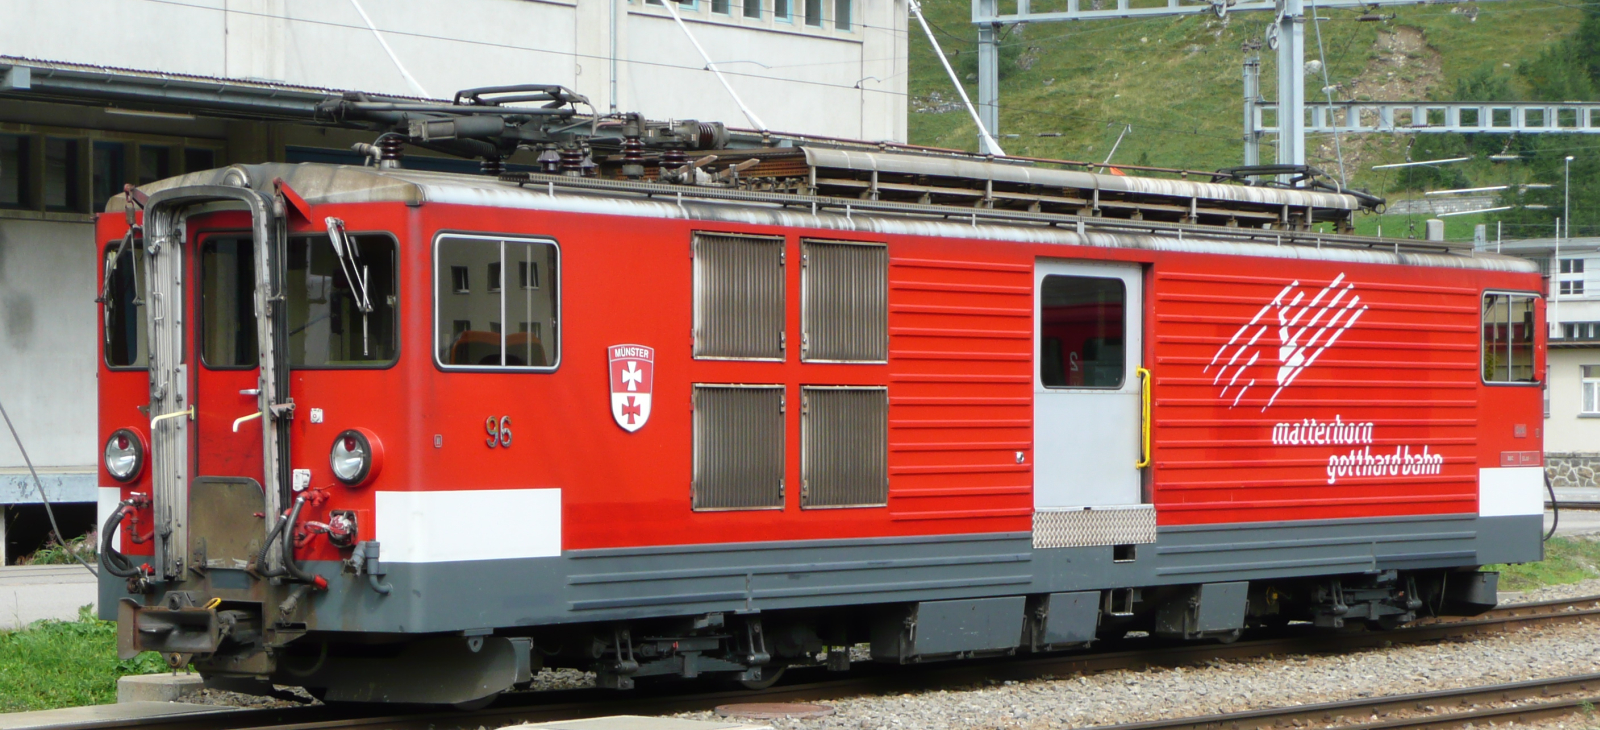 No. 96 in September 2008 in Andermatt